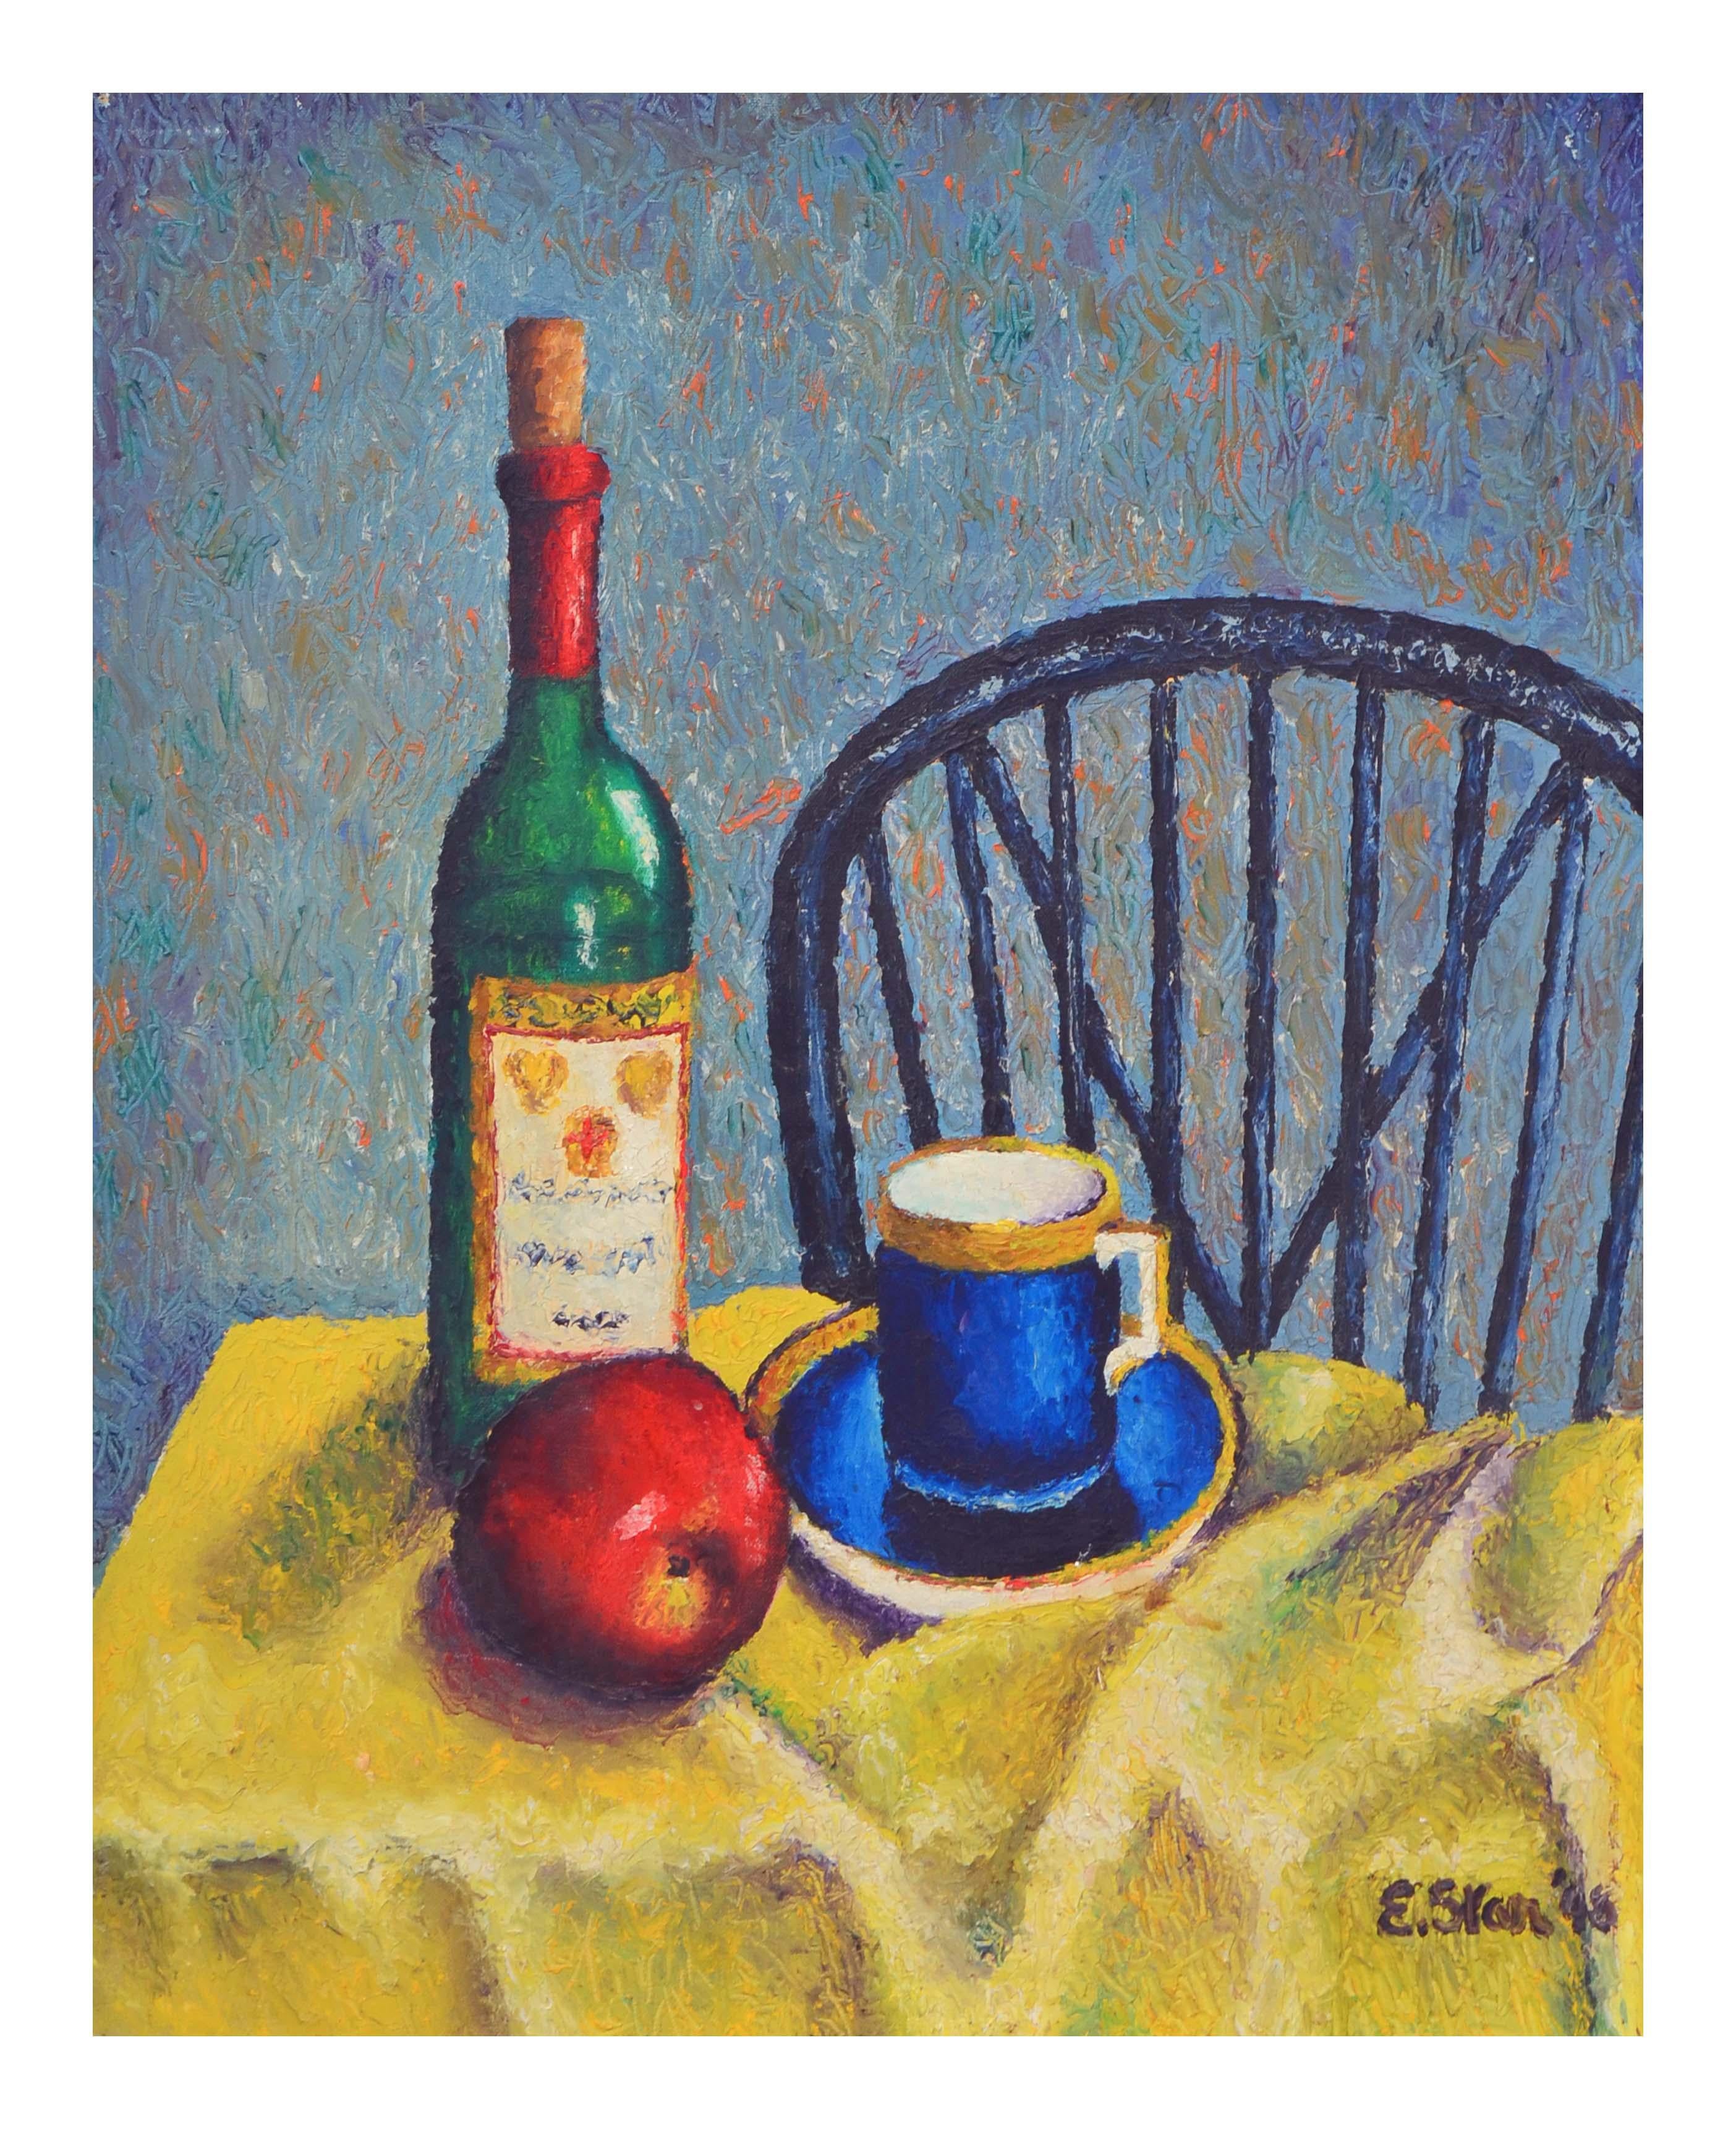 Zeitgenössisches zeitgenössisches Stillleben mit Apfel und Weinflasche  – Painting von E. Star